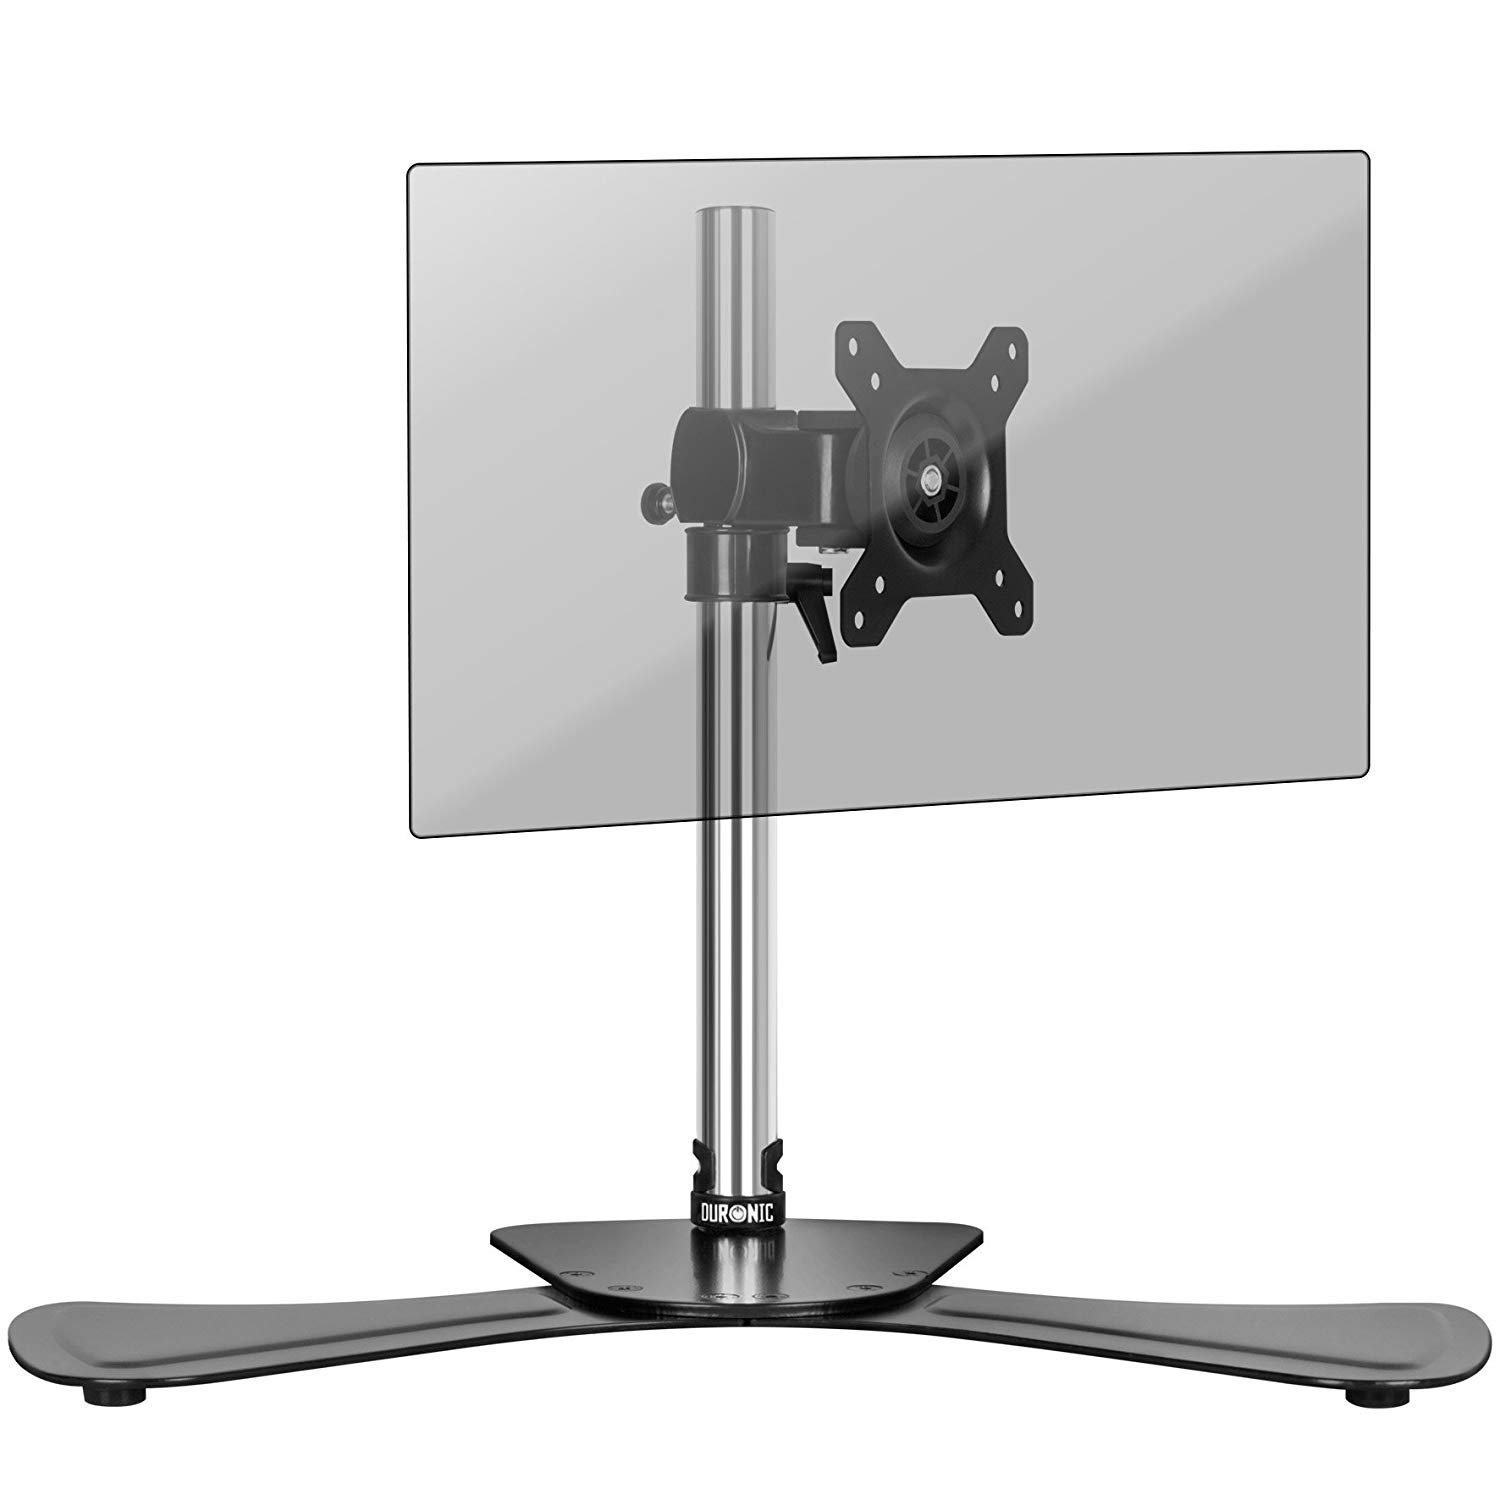 Duronic DM751 Monitorhalterung | Stahl-Standfuß für Monitor bis 24 Zoll | Für Bildschirm bis 8 kg geeignet | Neigungswinkel (-) 15° | LCD OLED Display um 360° drehbar | Höhenverstellbar